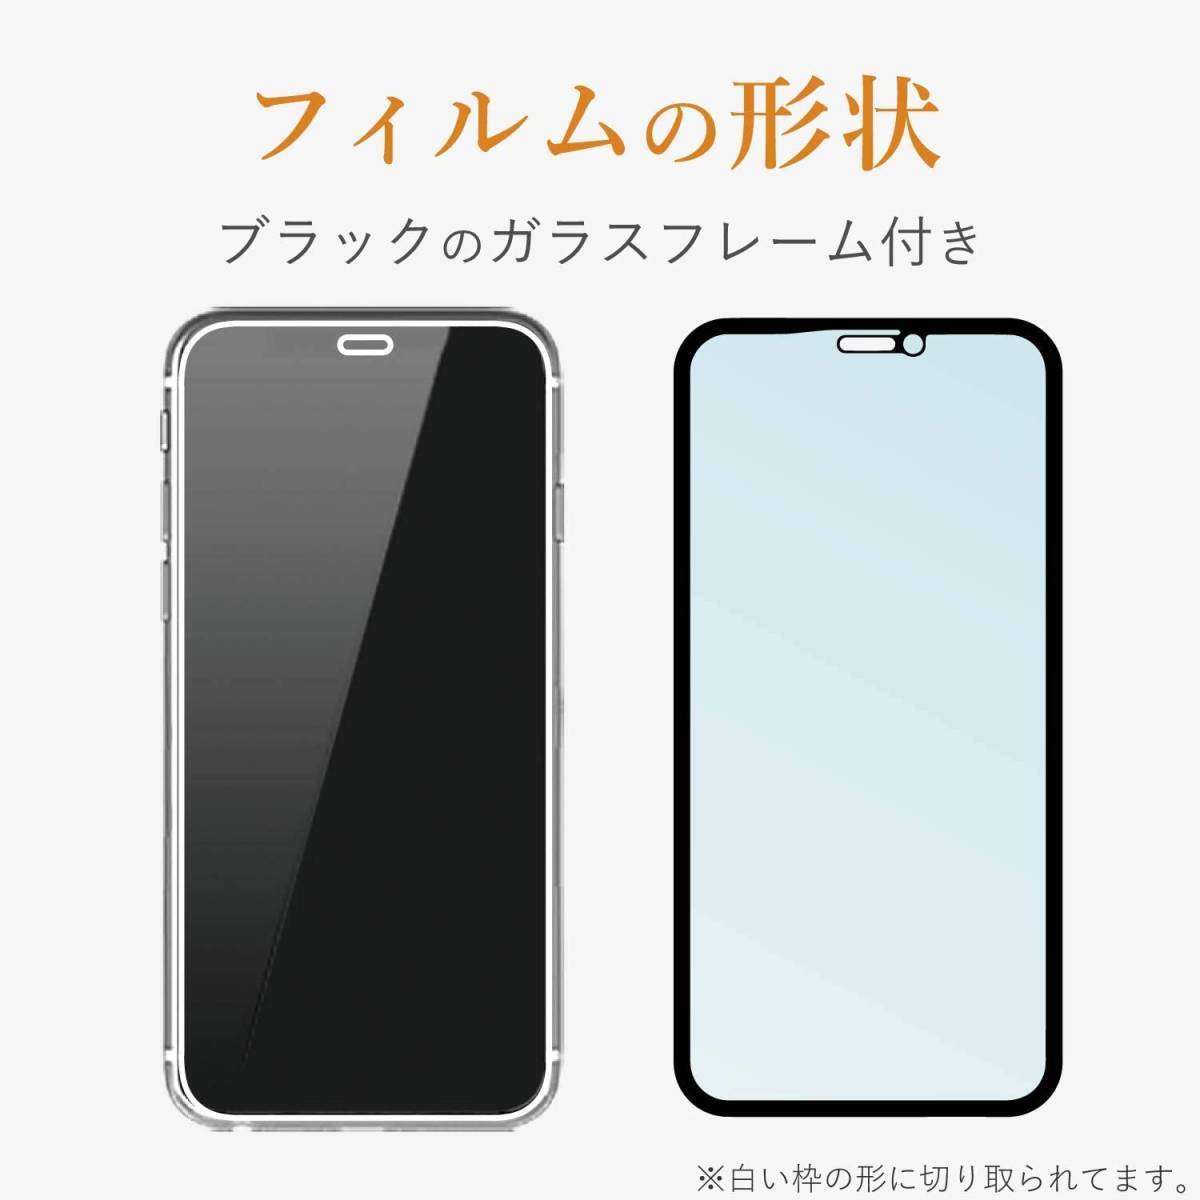 エレコム iPhone 11・XR 強化ガラスフィルム セラミックコート ブルーライトカット 液晶全面保護 フルカバー 最上級の硬さ シール 172